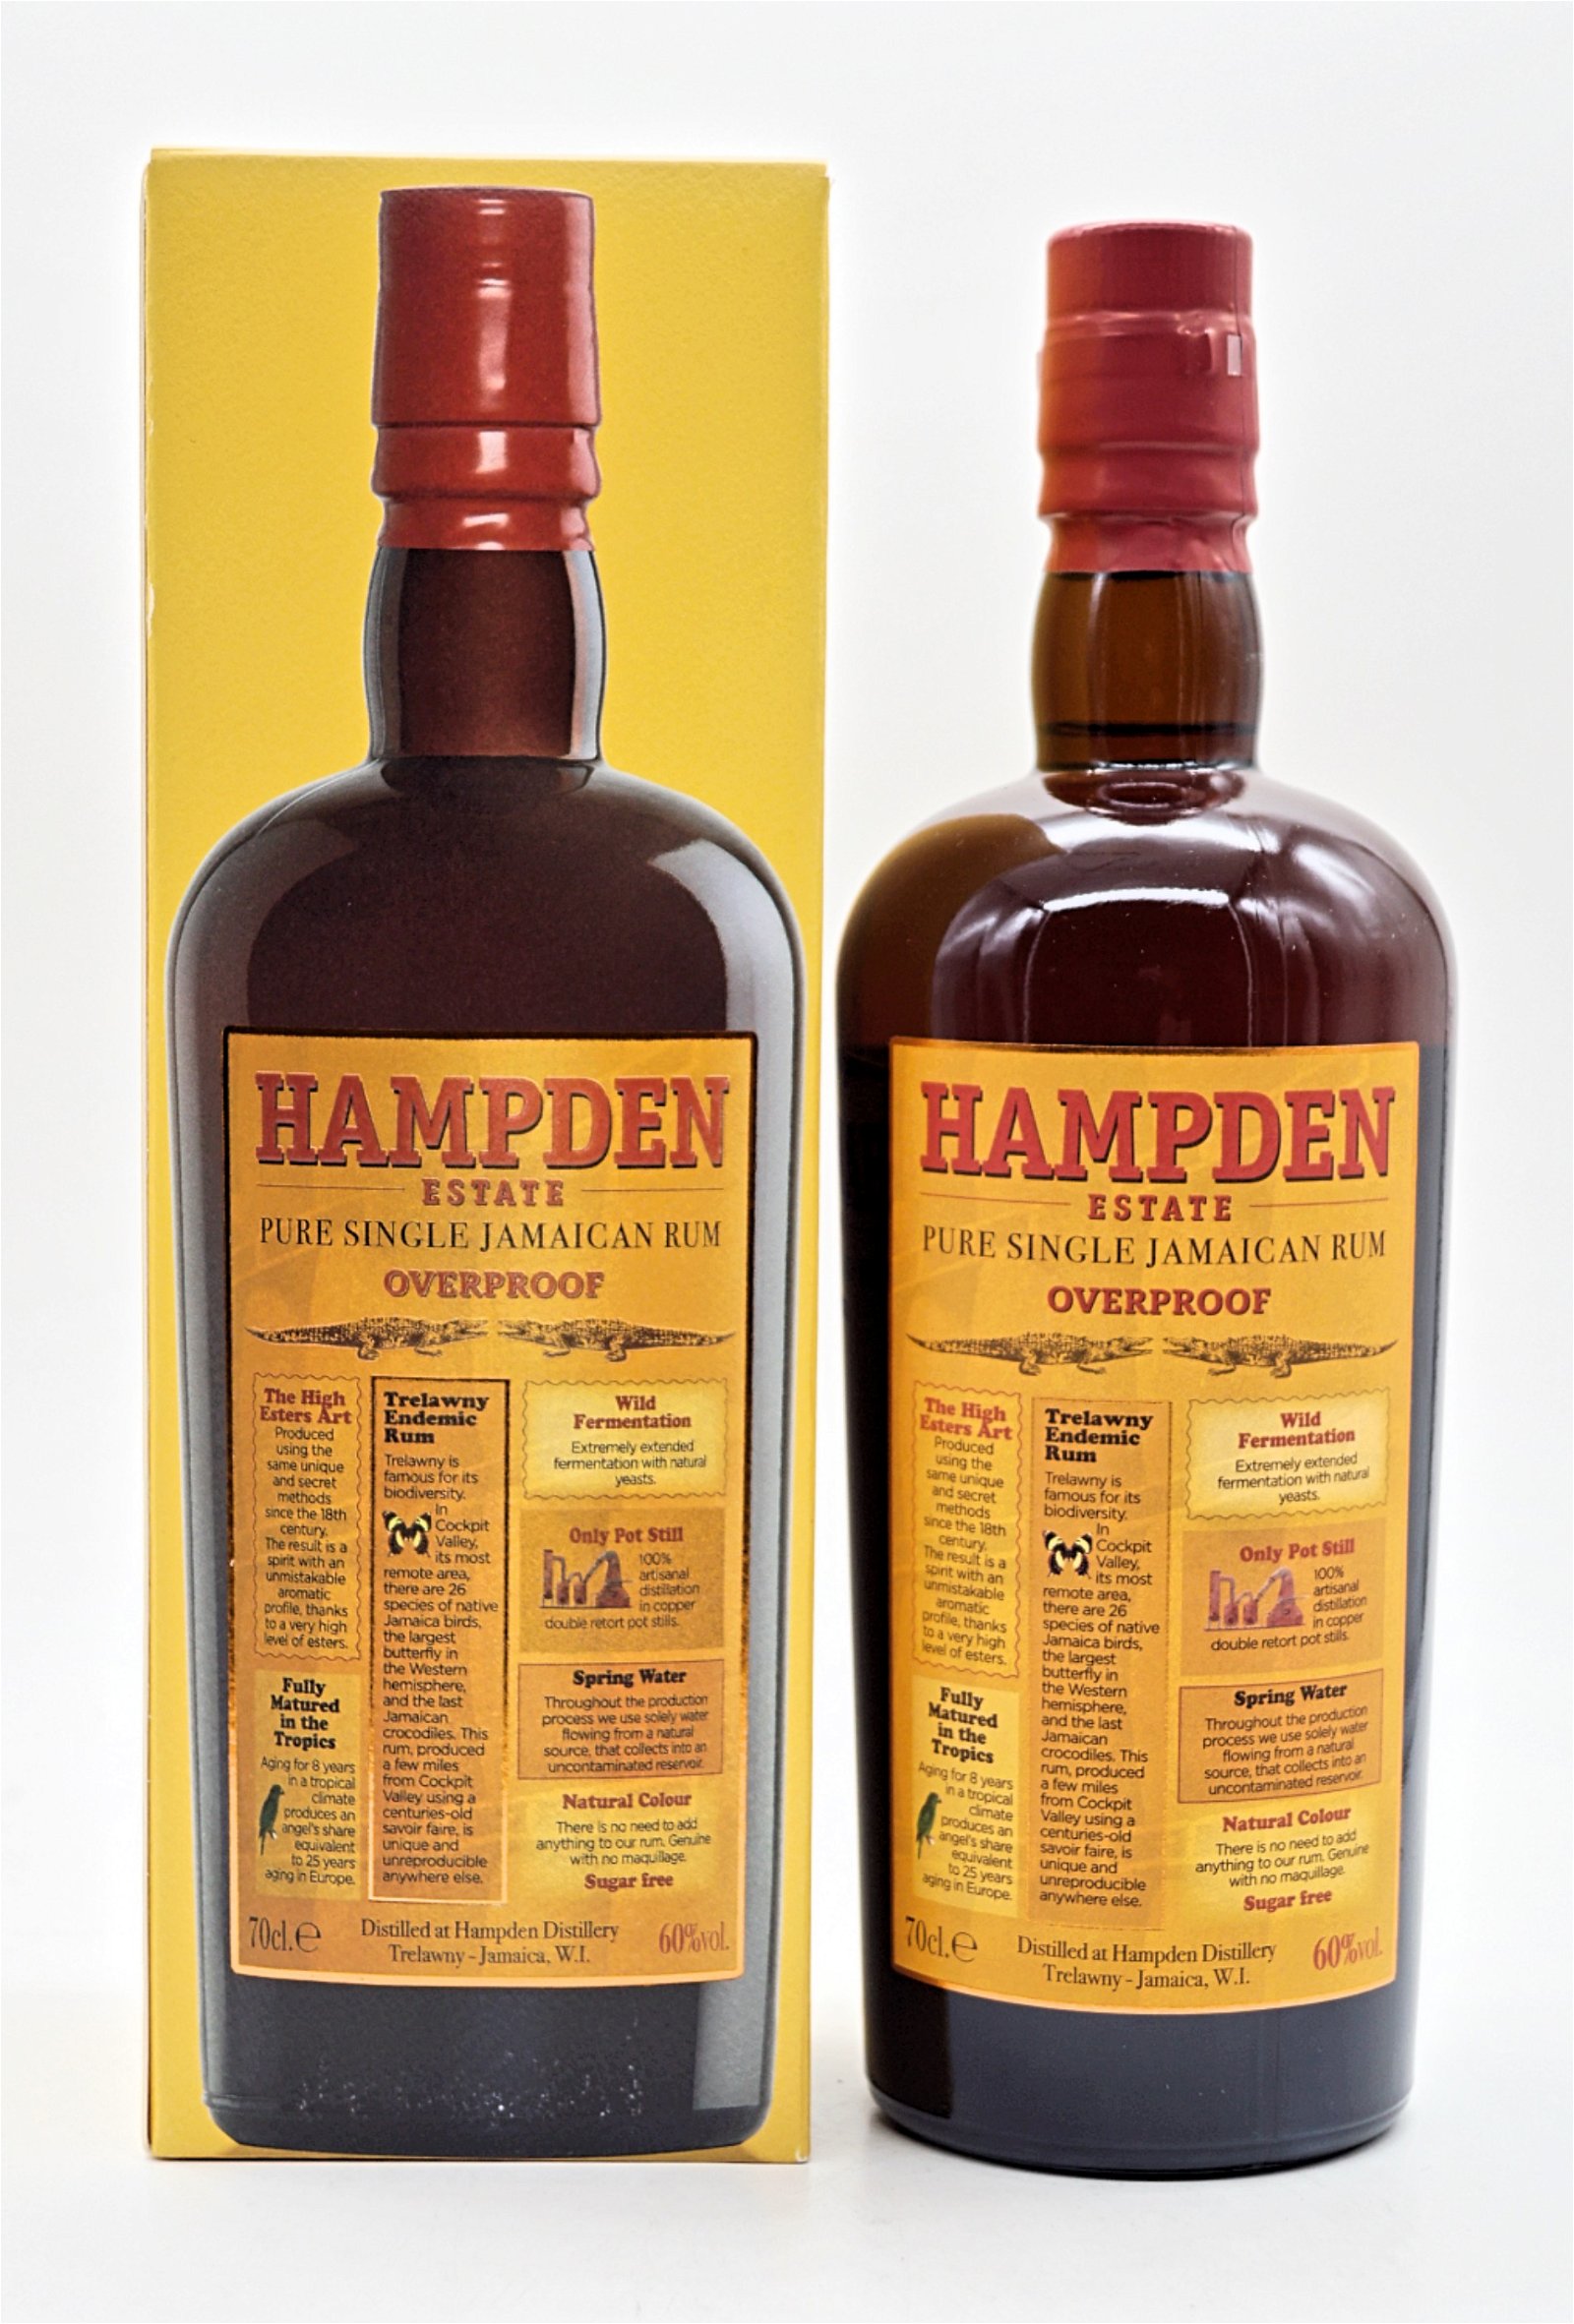 The Hampden Overproof Pure Single Jamaican Rum